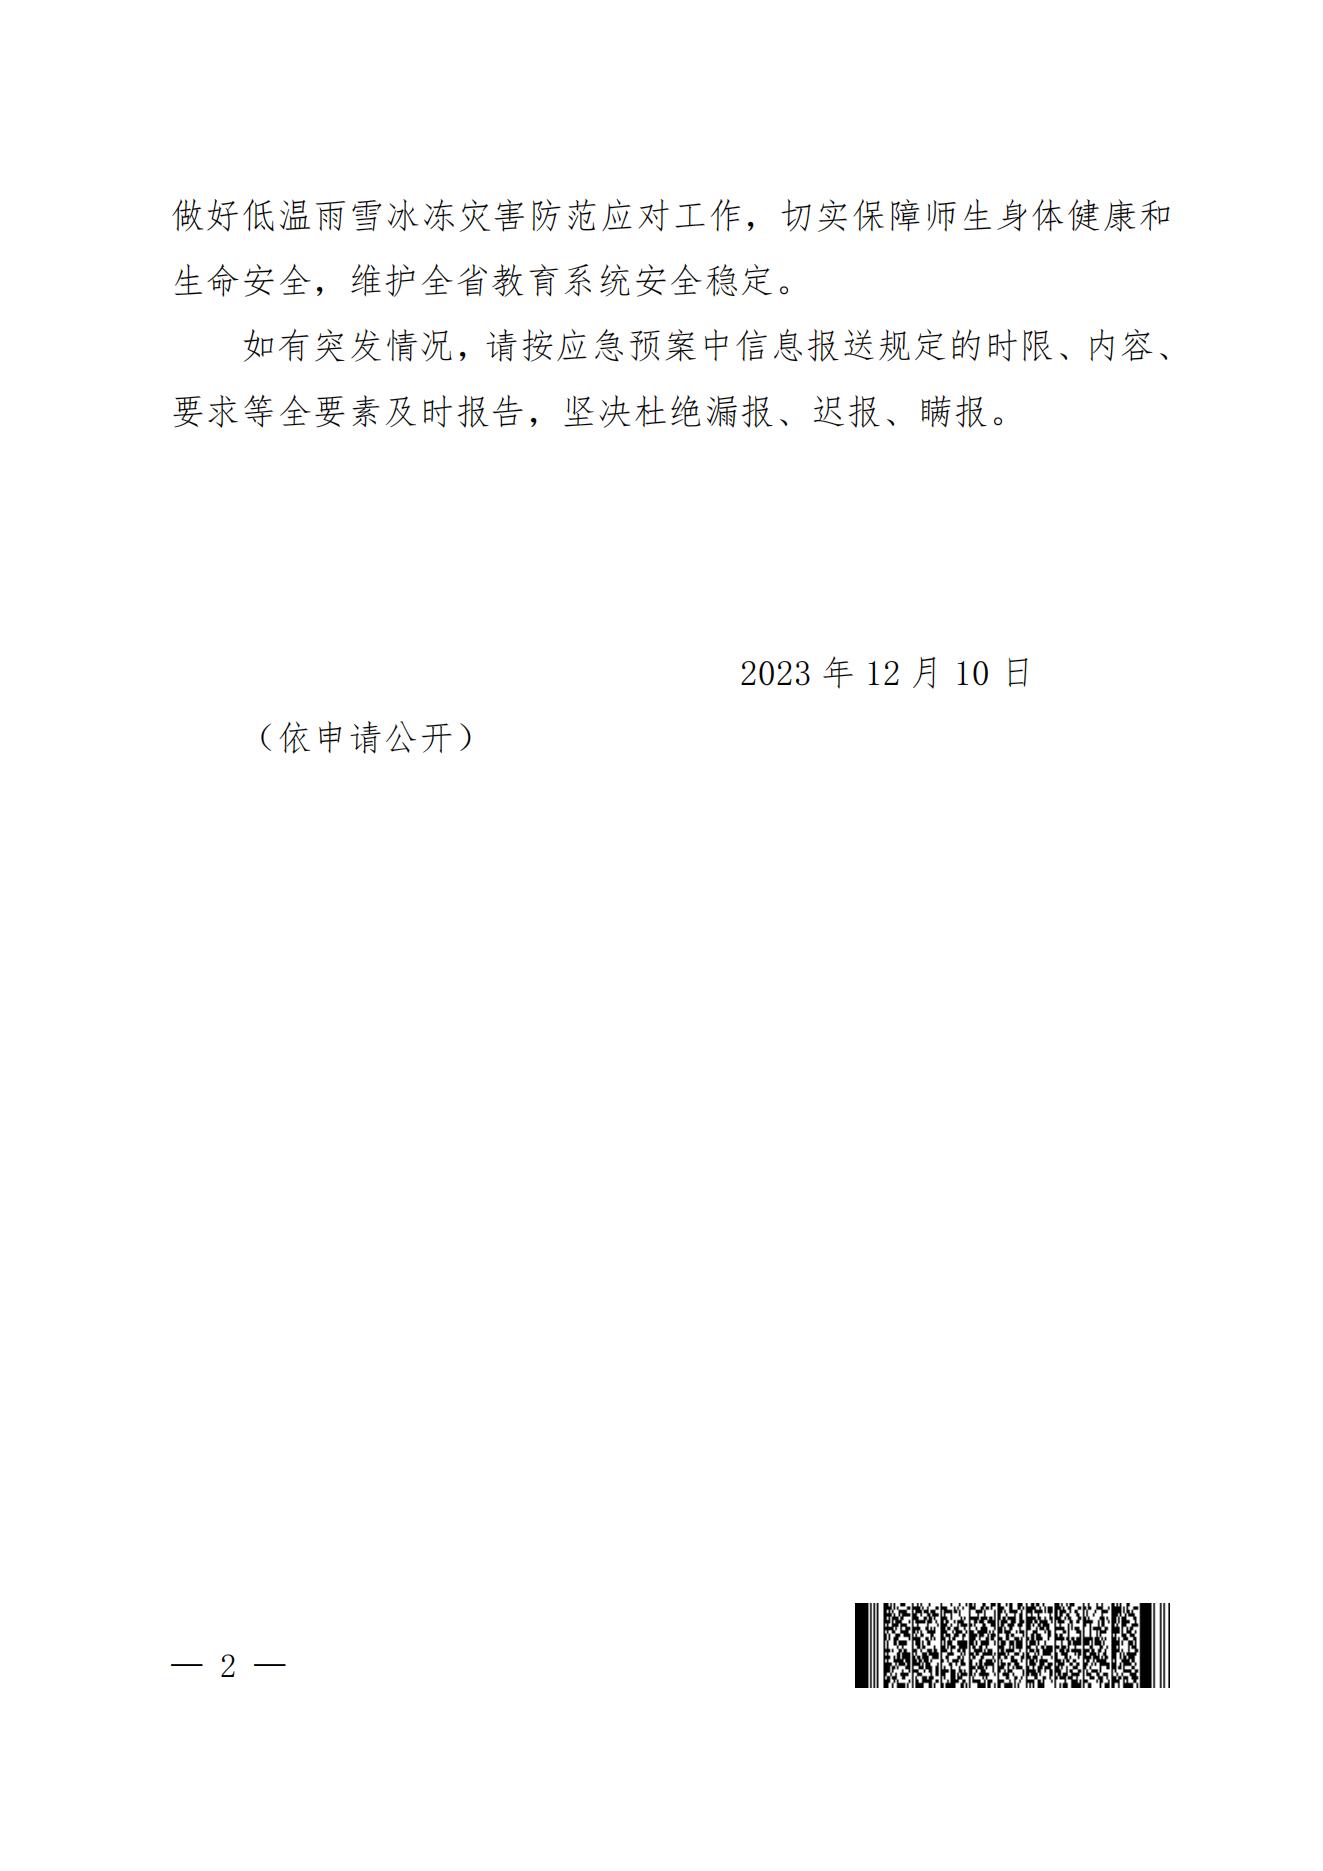 河南省教育厅办公室转发关于做好近期低温雨雪冰冻灾害防范应对工作的通知(2)_01.jpg